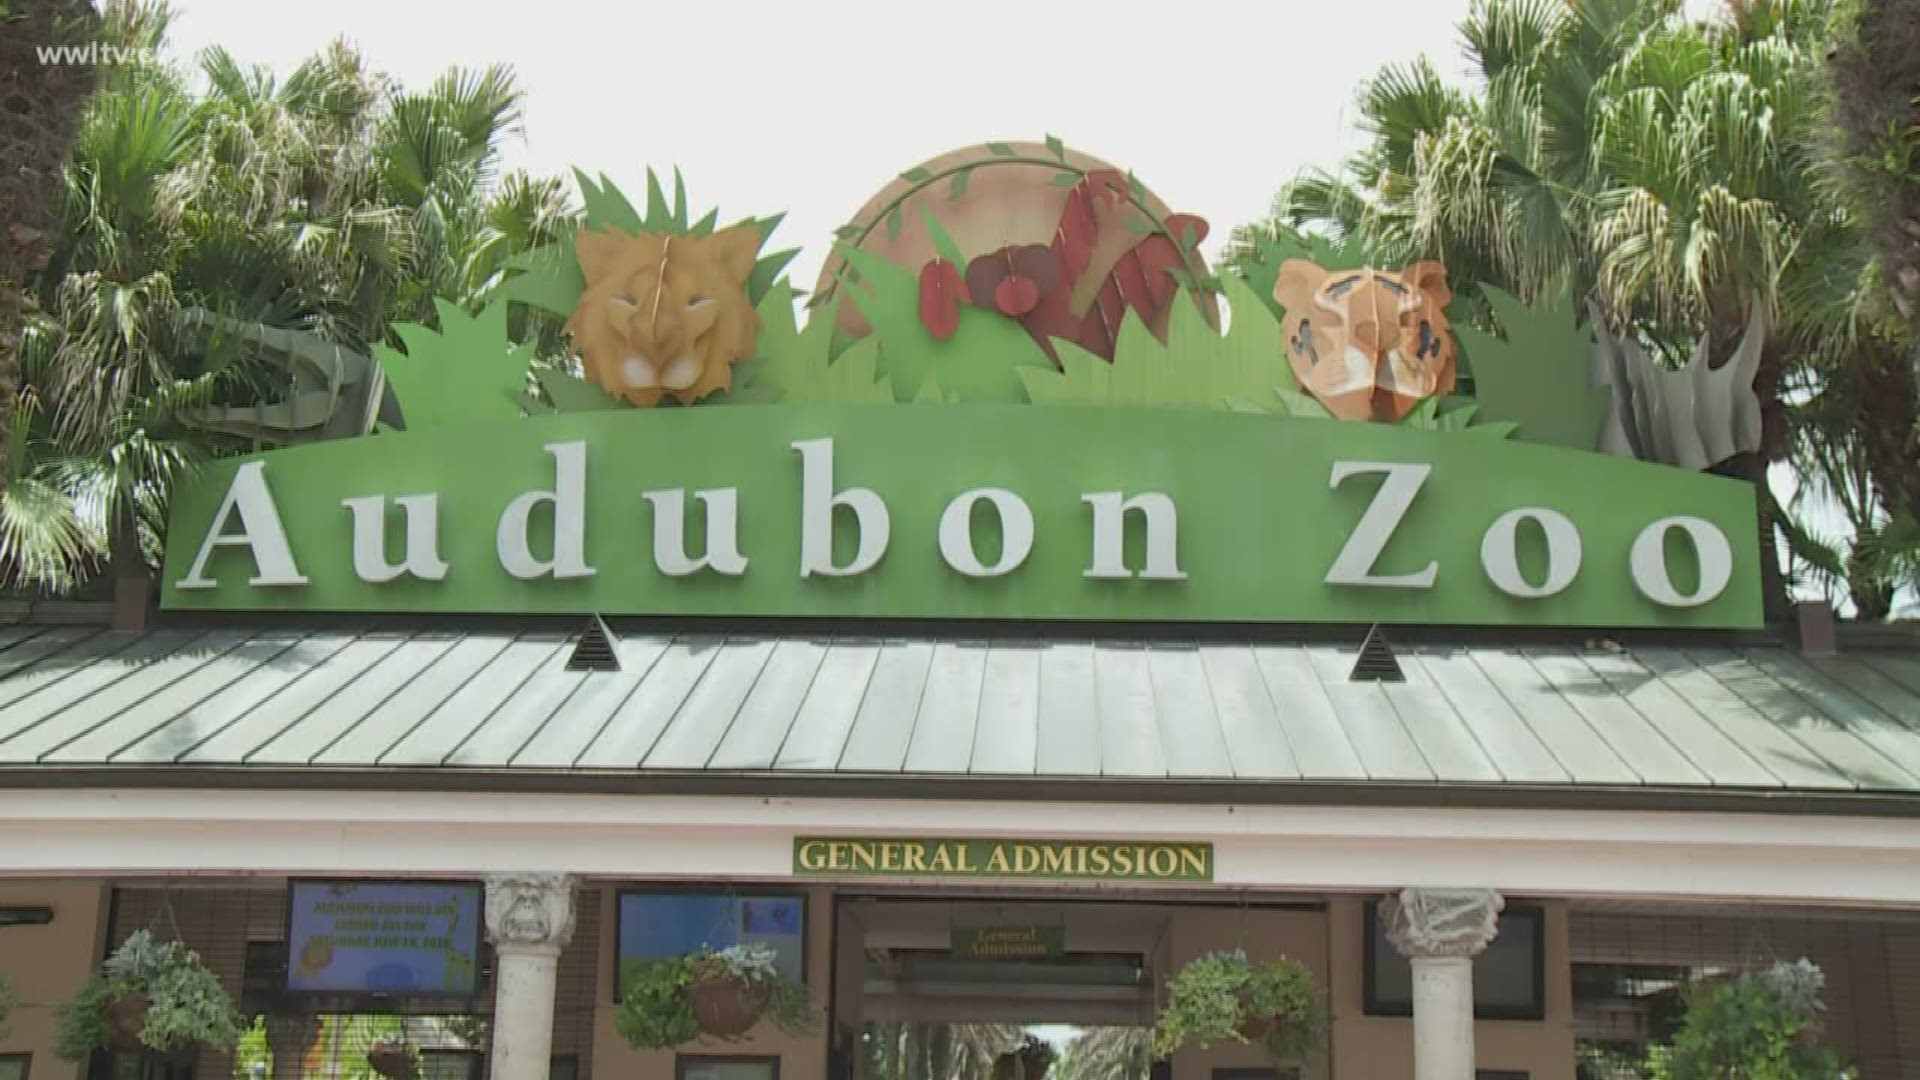 Audit: Audubon Nature used public funds parties |